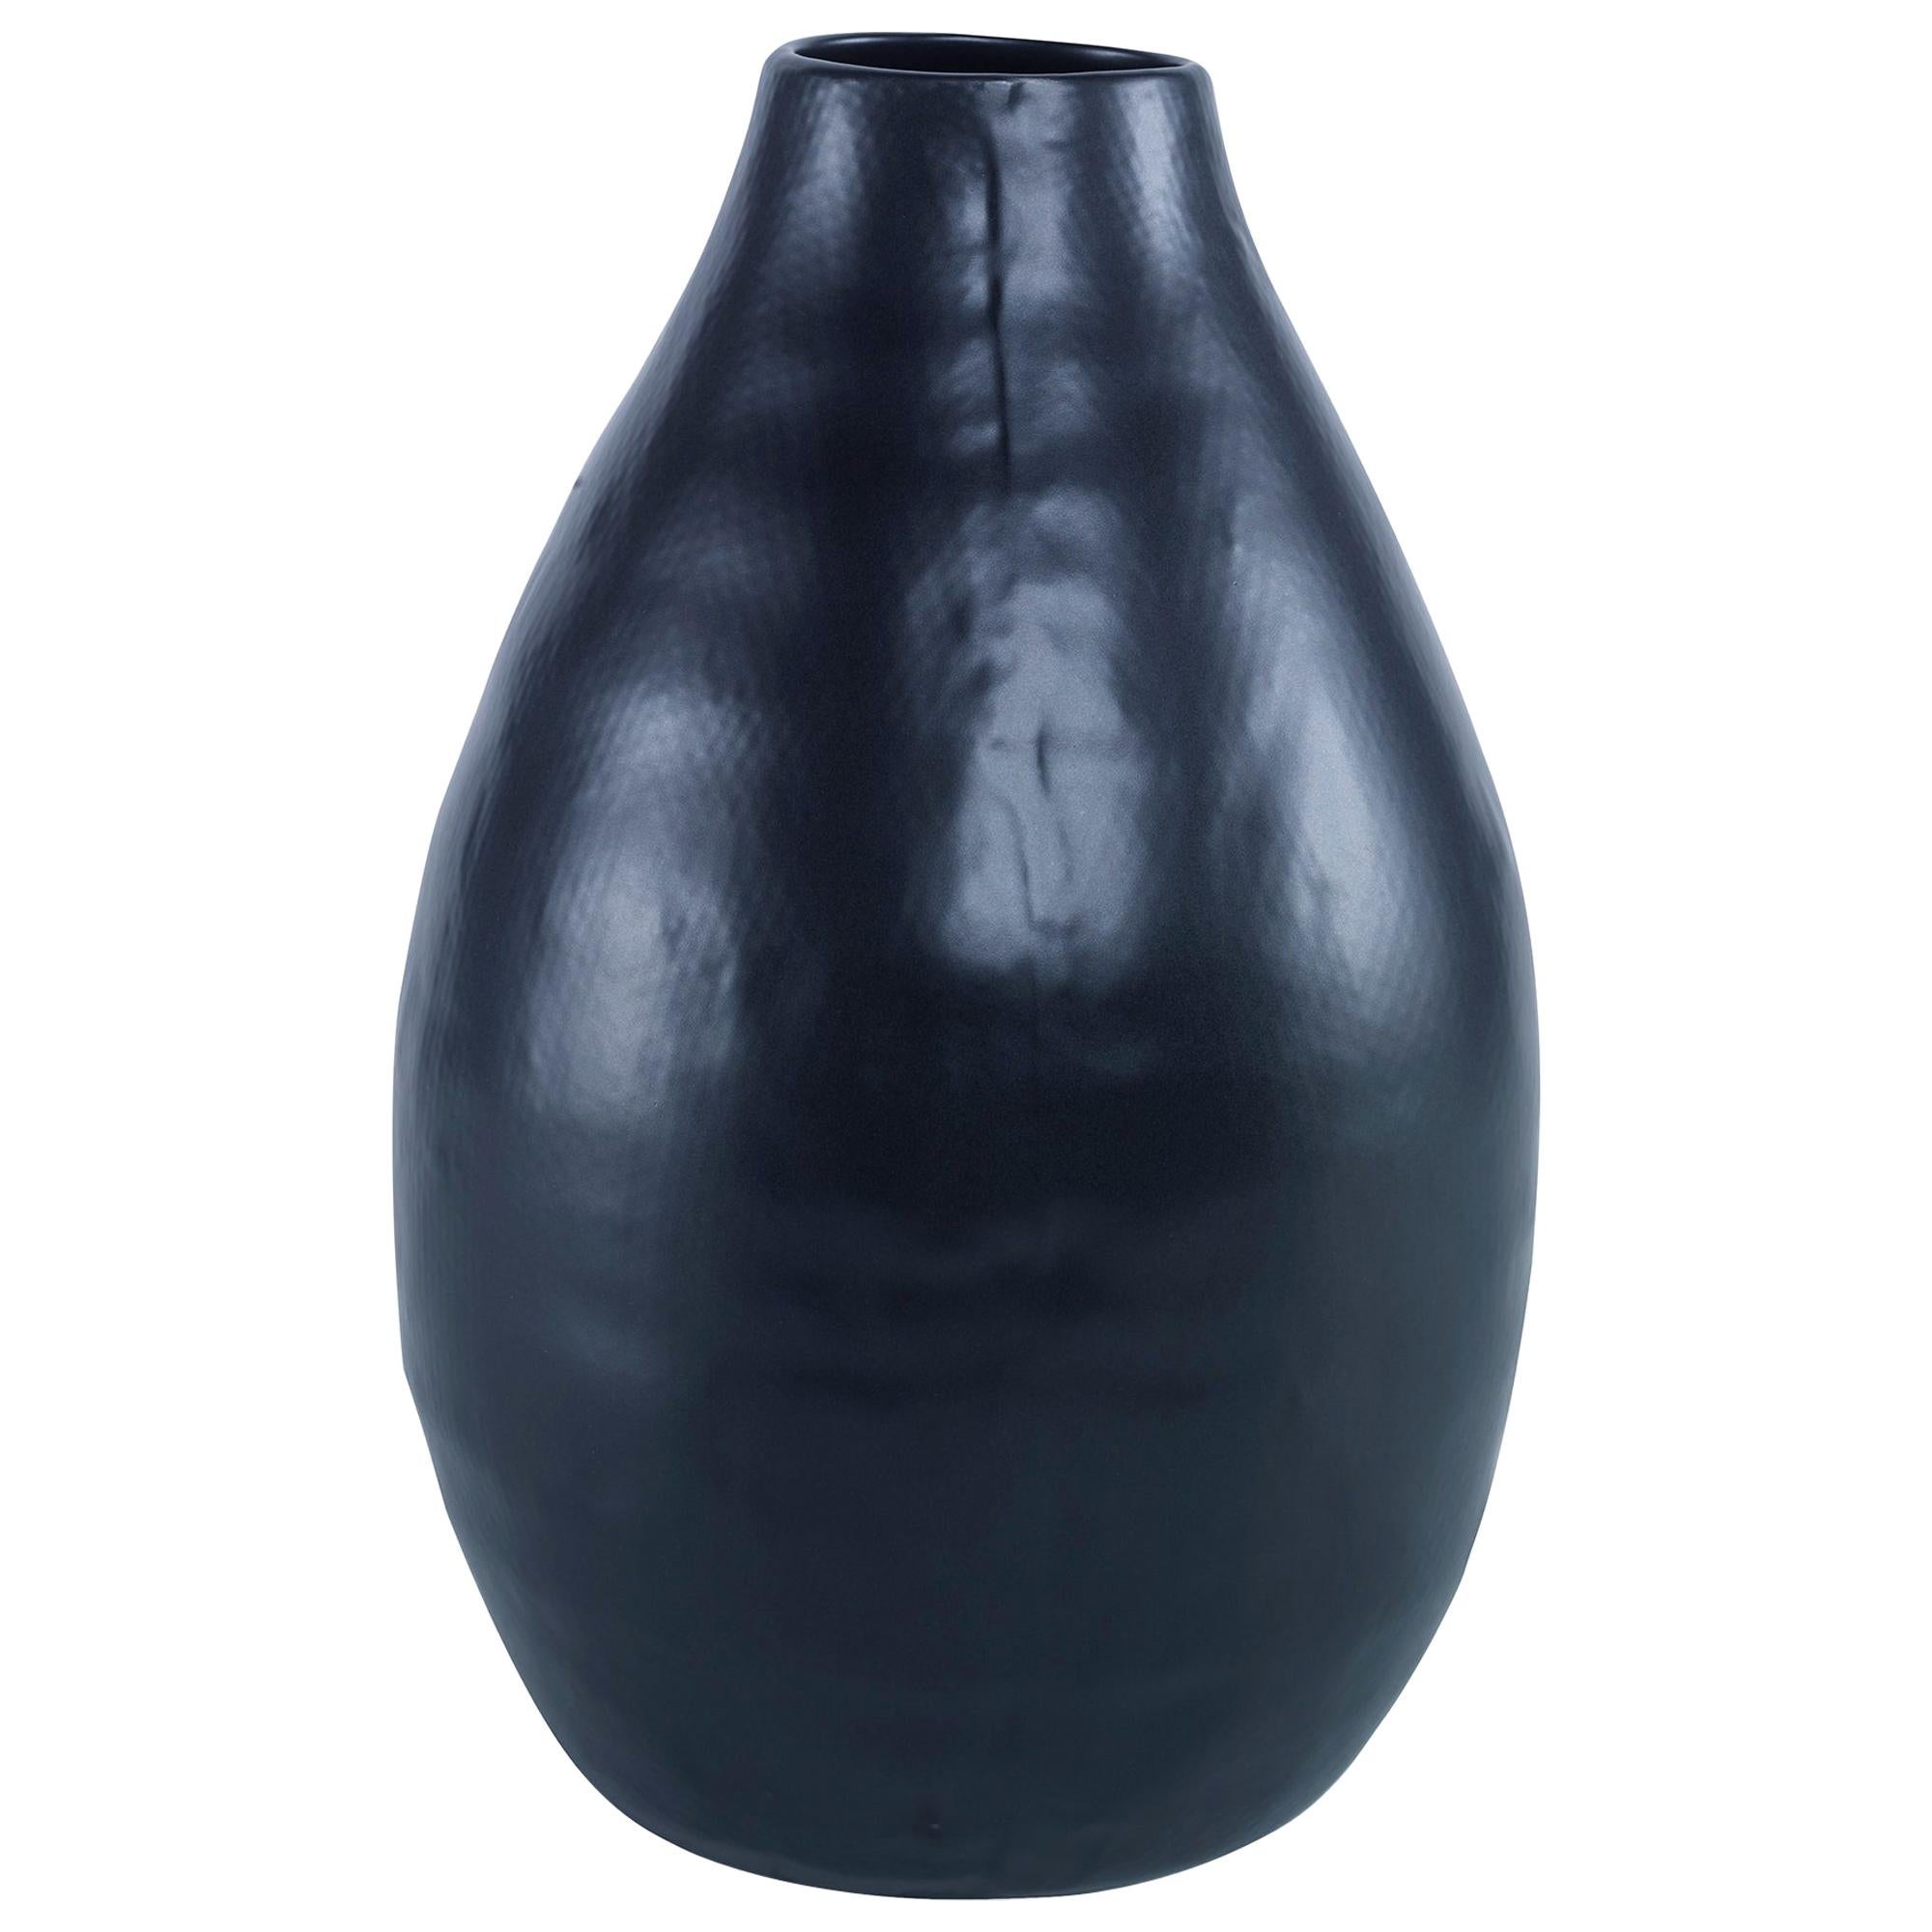 Nova Large Vase in Black Ceramic by CuratedKravet For Sale